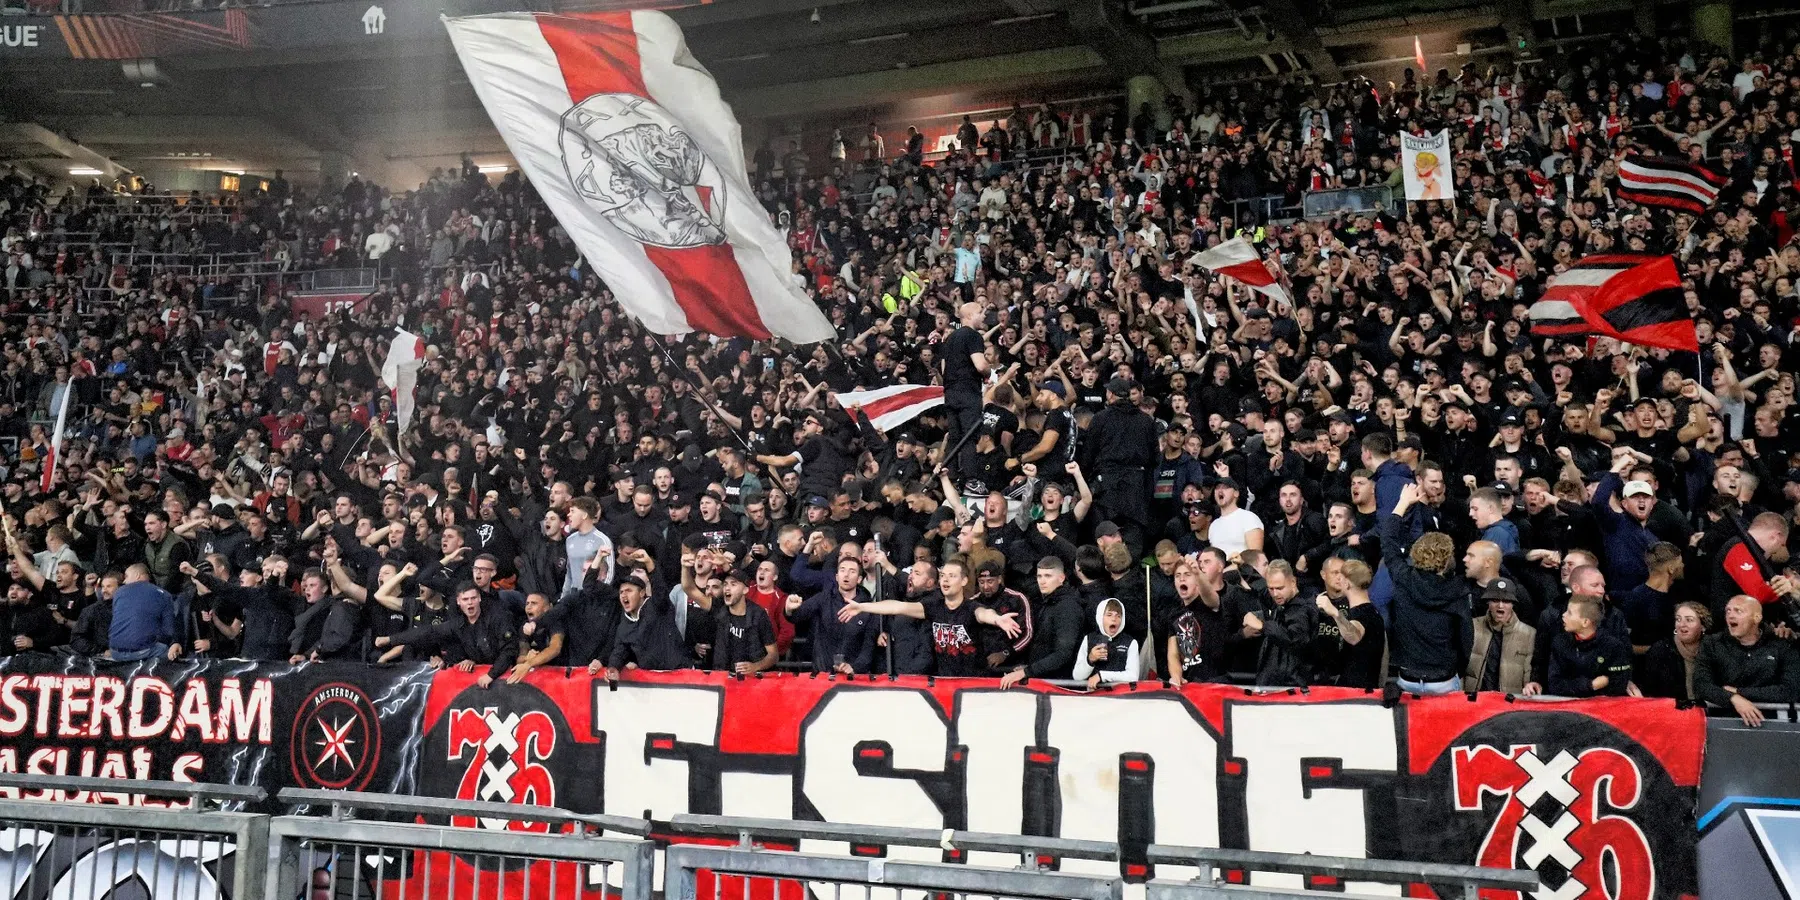 'Flinke puinhoop' op tribune Ajax door pro-Palestijnse vlaggen